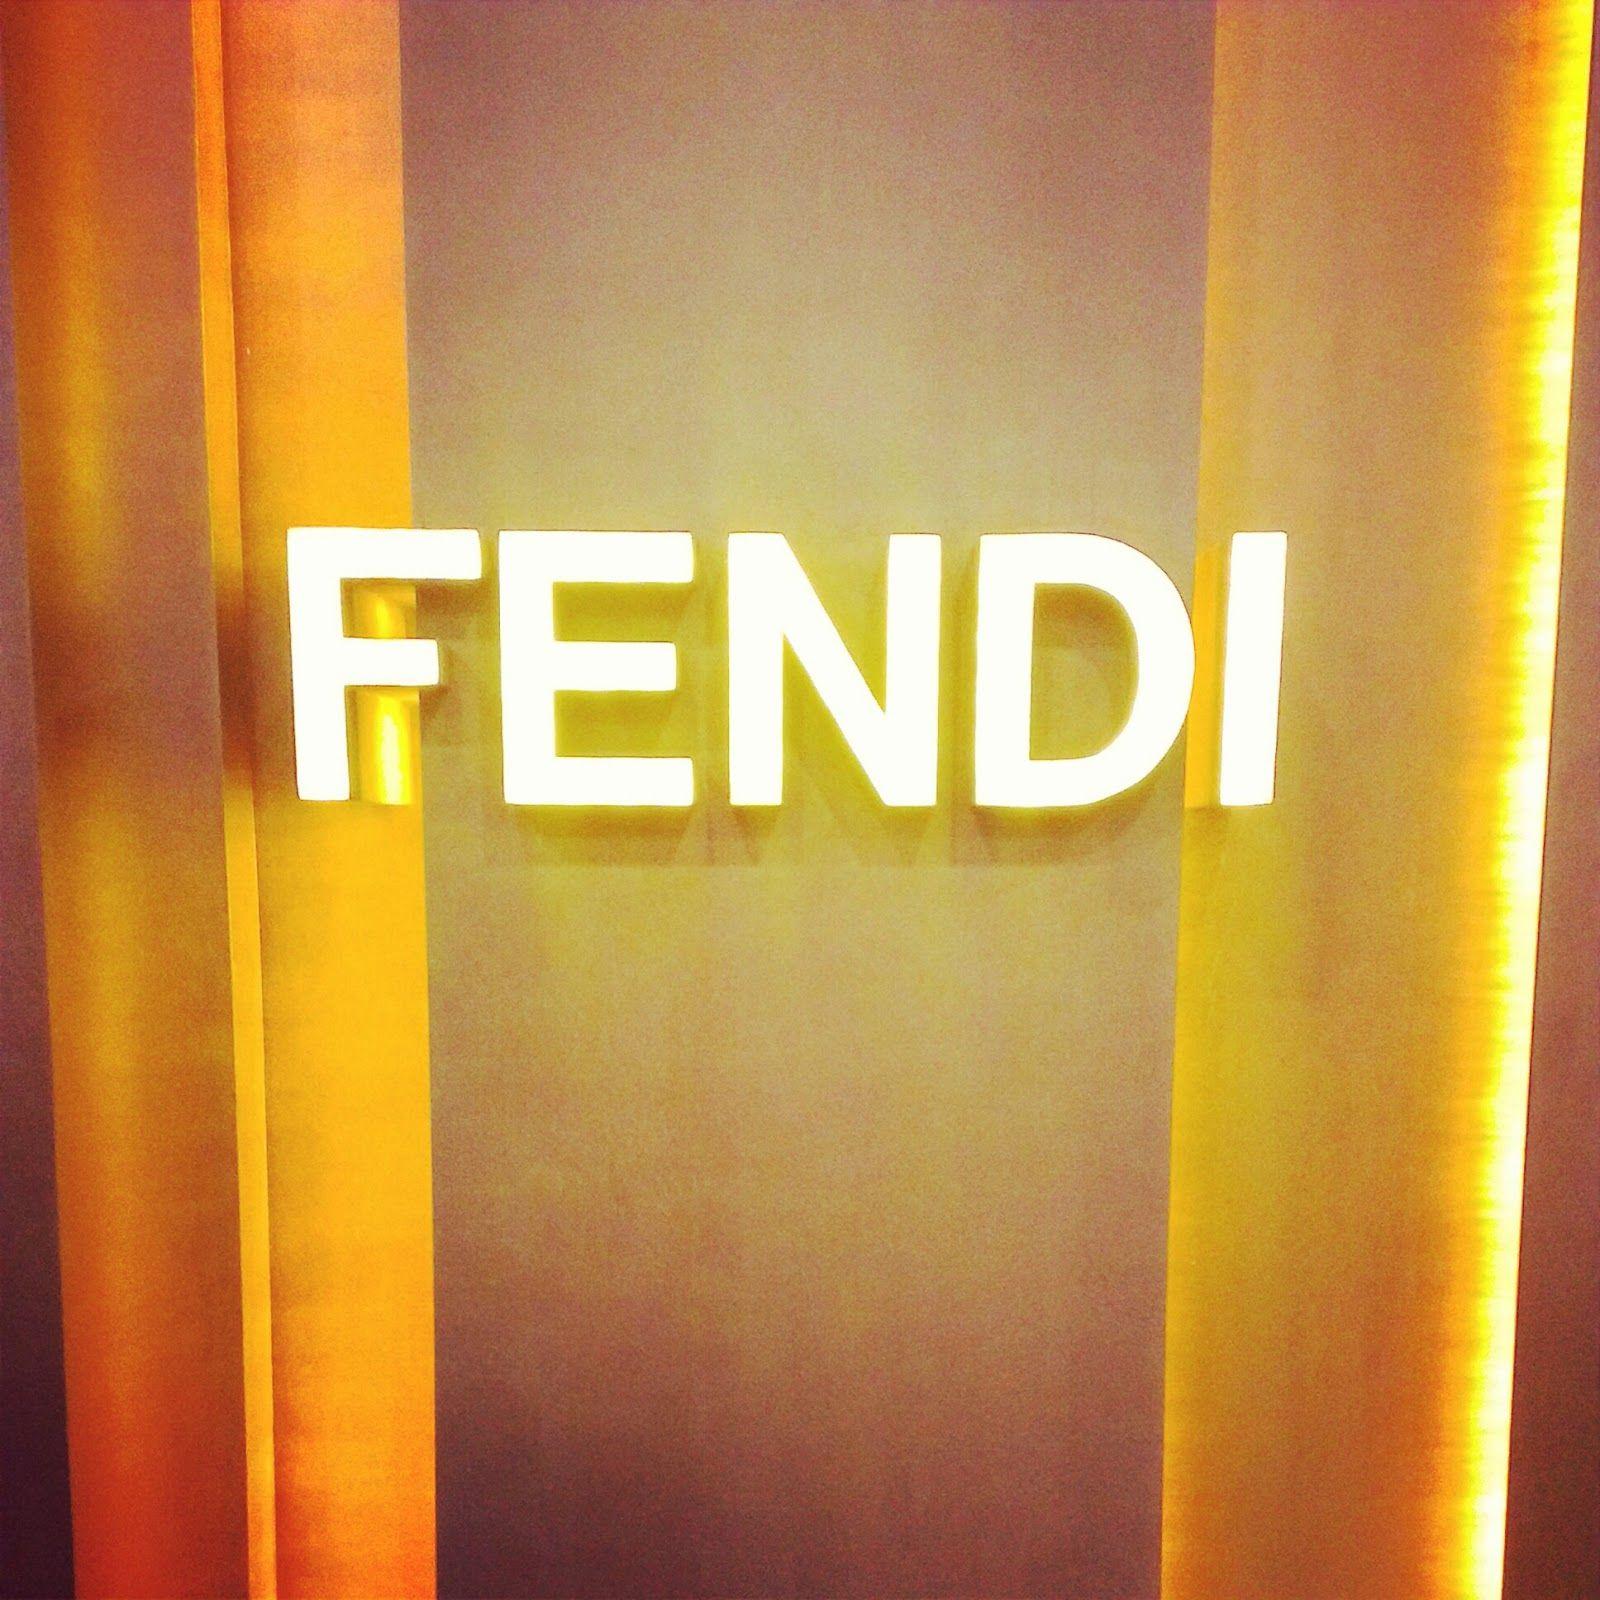 Fendi HD Wallpapers - Wallpaper Cave